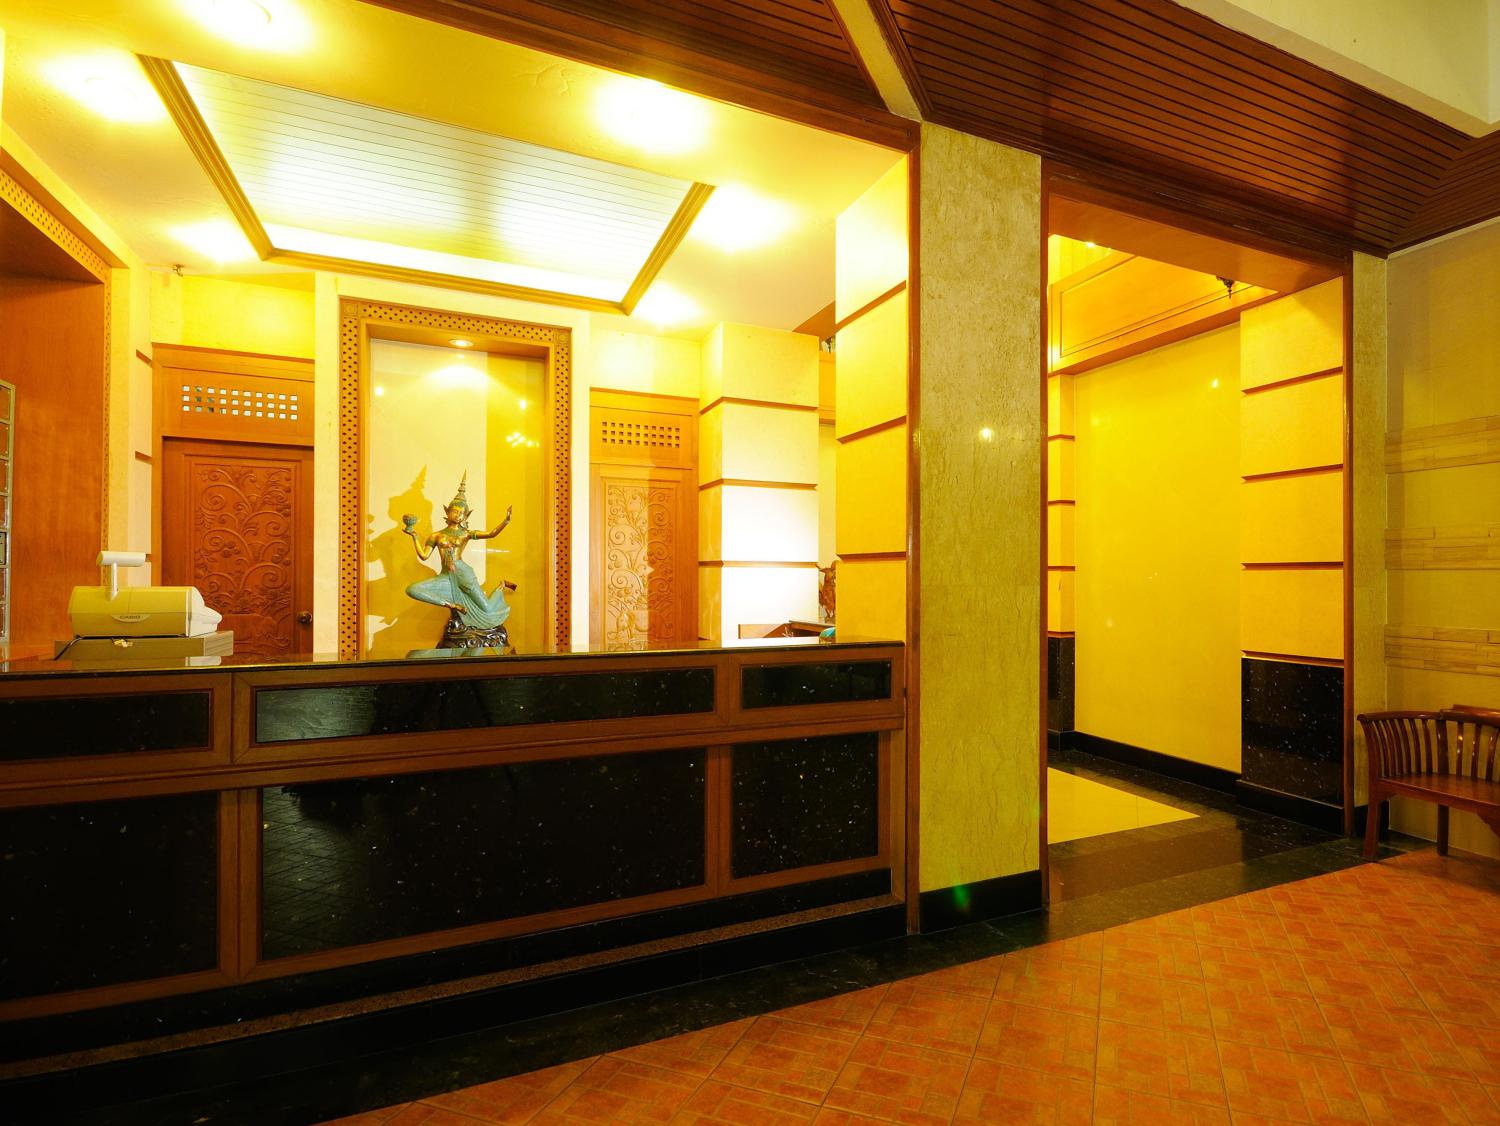 Khaosan Palace Hotel - Image 3